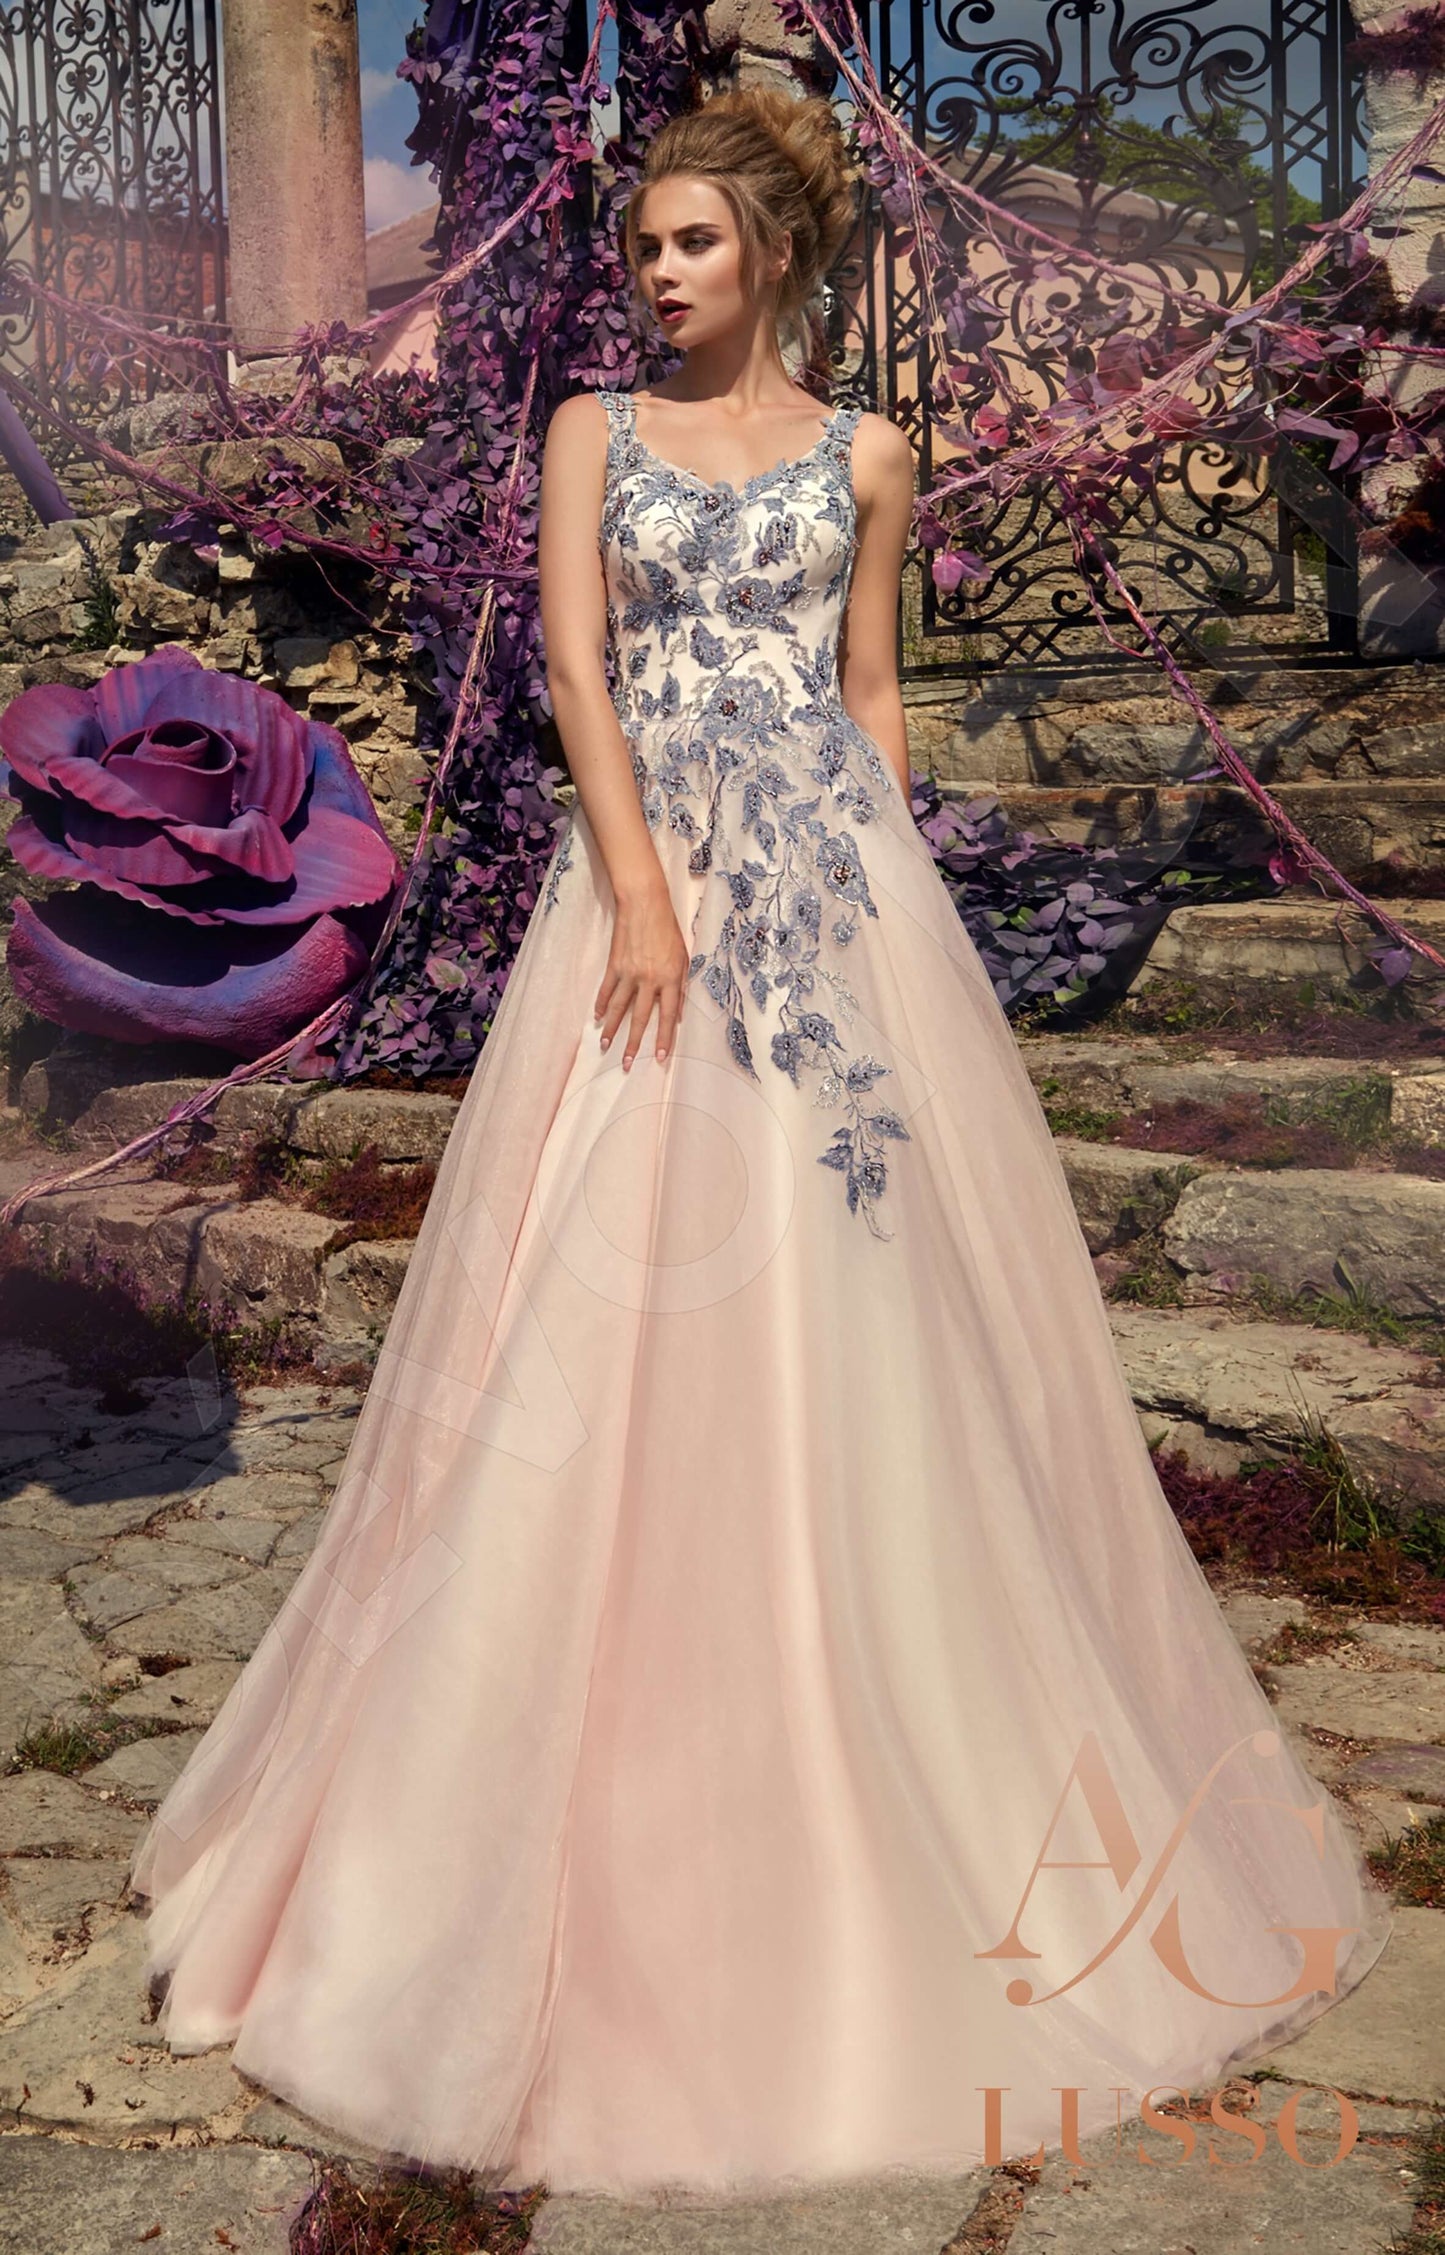 Alteera Open back A-line Sleeveless Wedding Dress Front